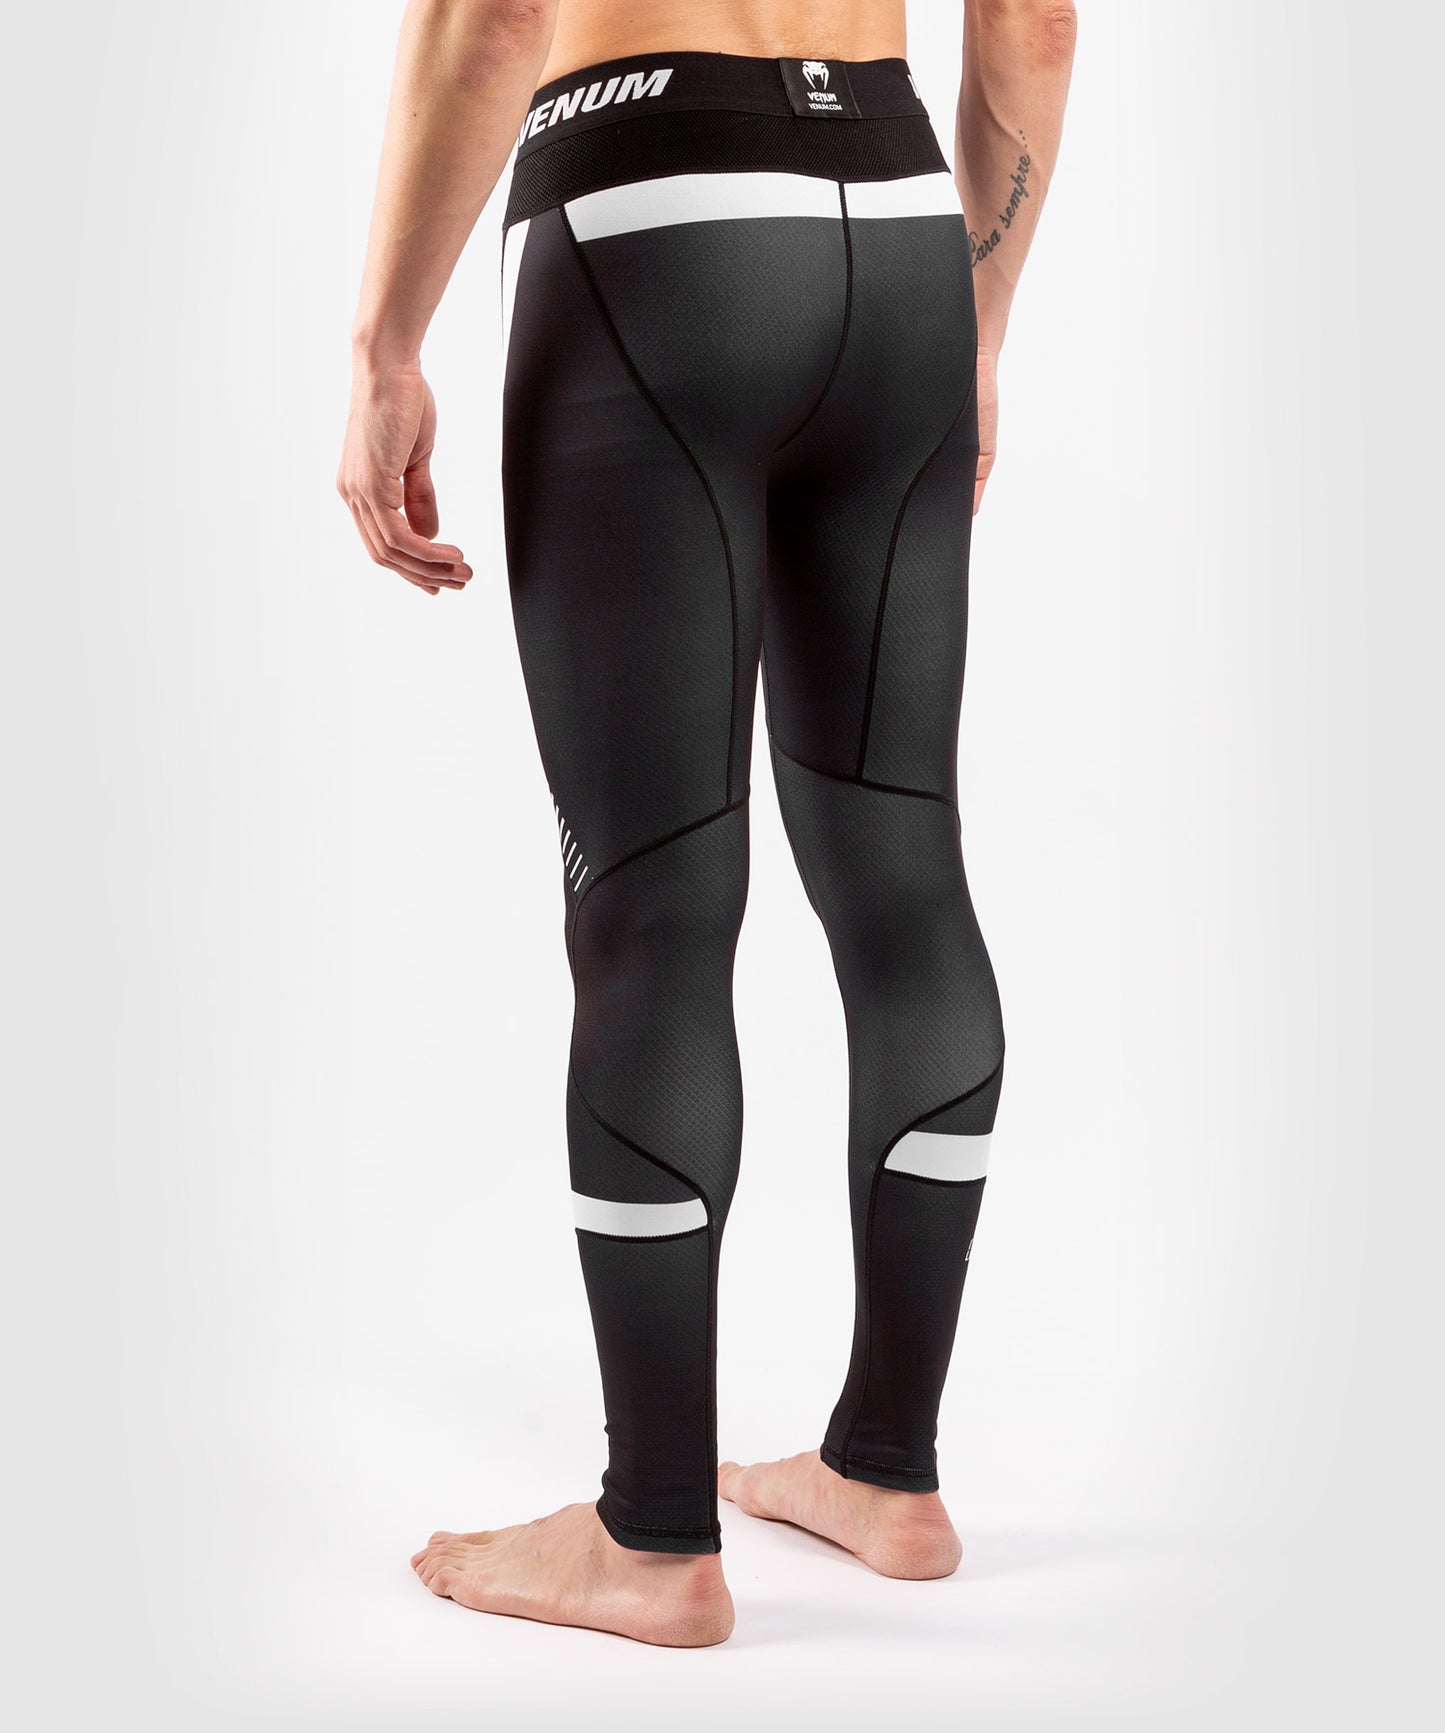 Pantalones de compresión Venum No Gi 3.0 - Negro/Blanco